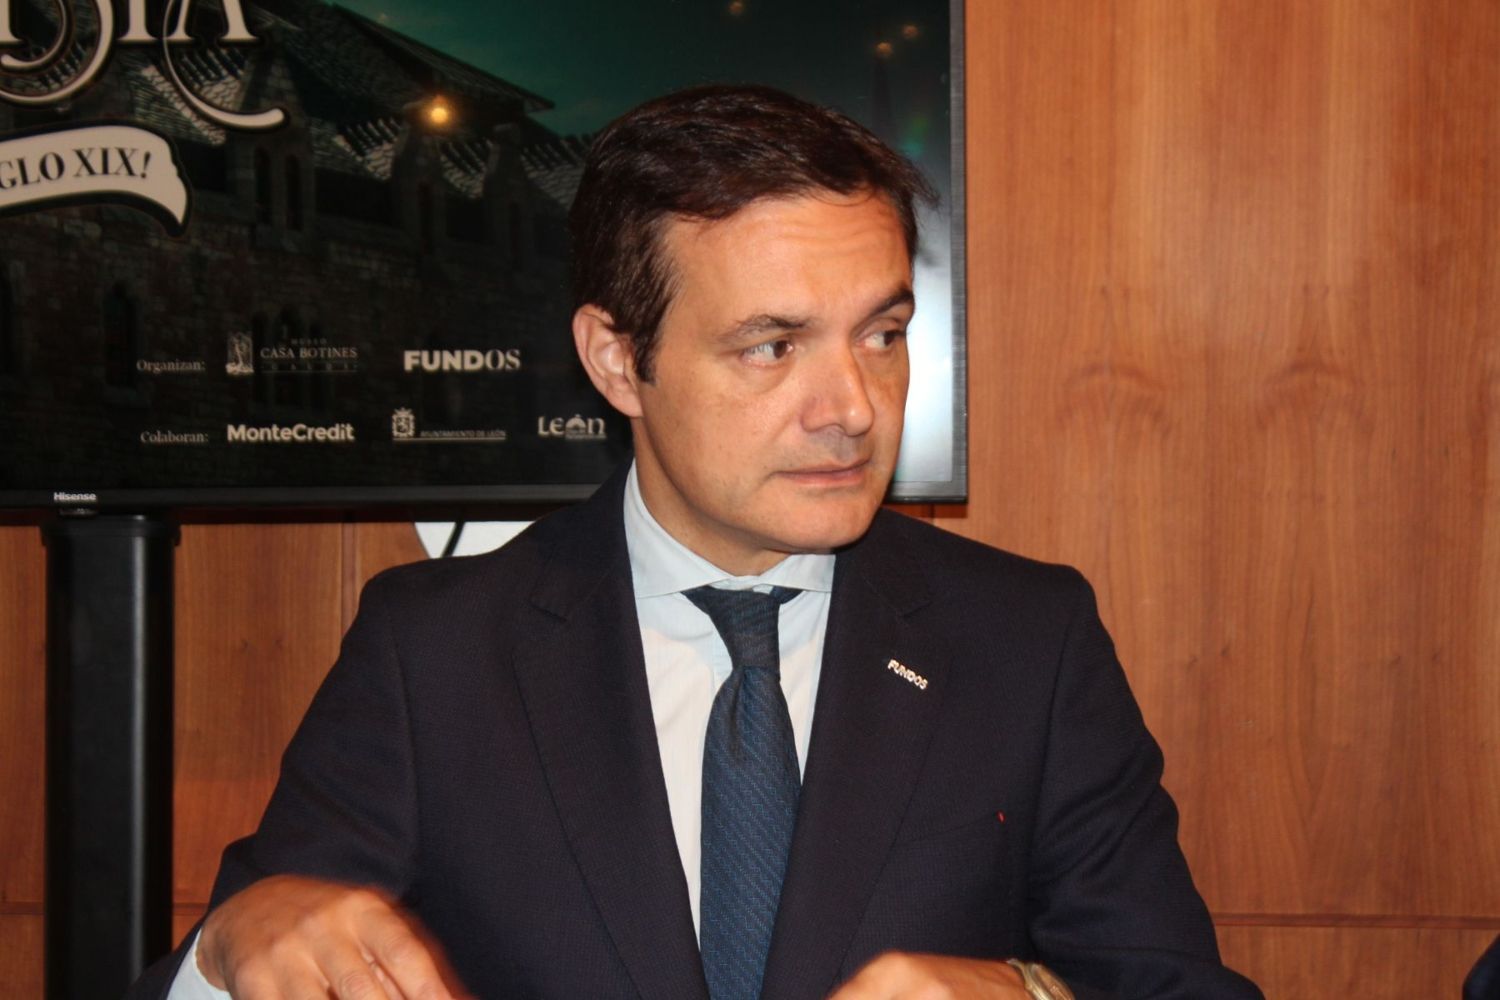 Raul Fernandez Sobrino,  director de Cultura y Patrimonio de Fundos